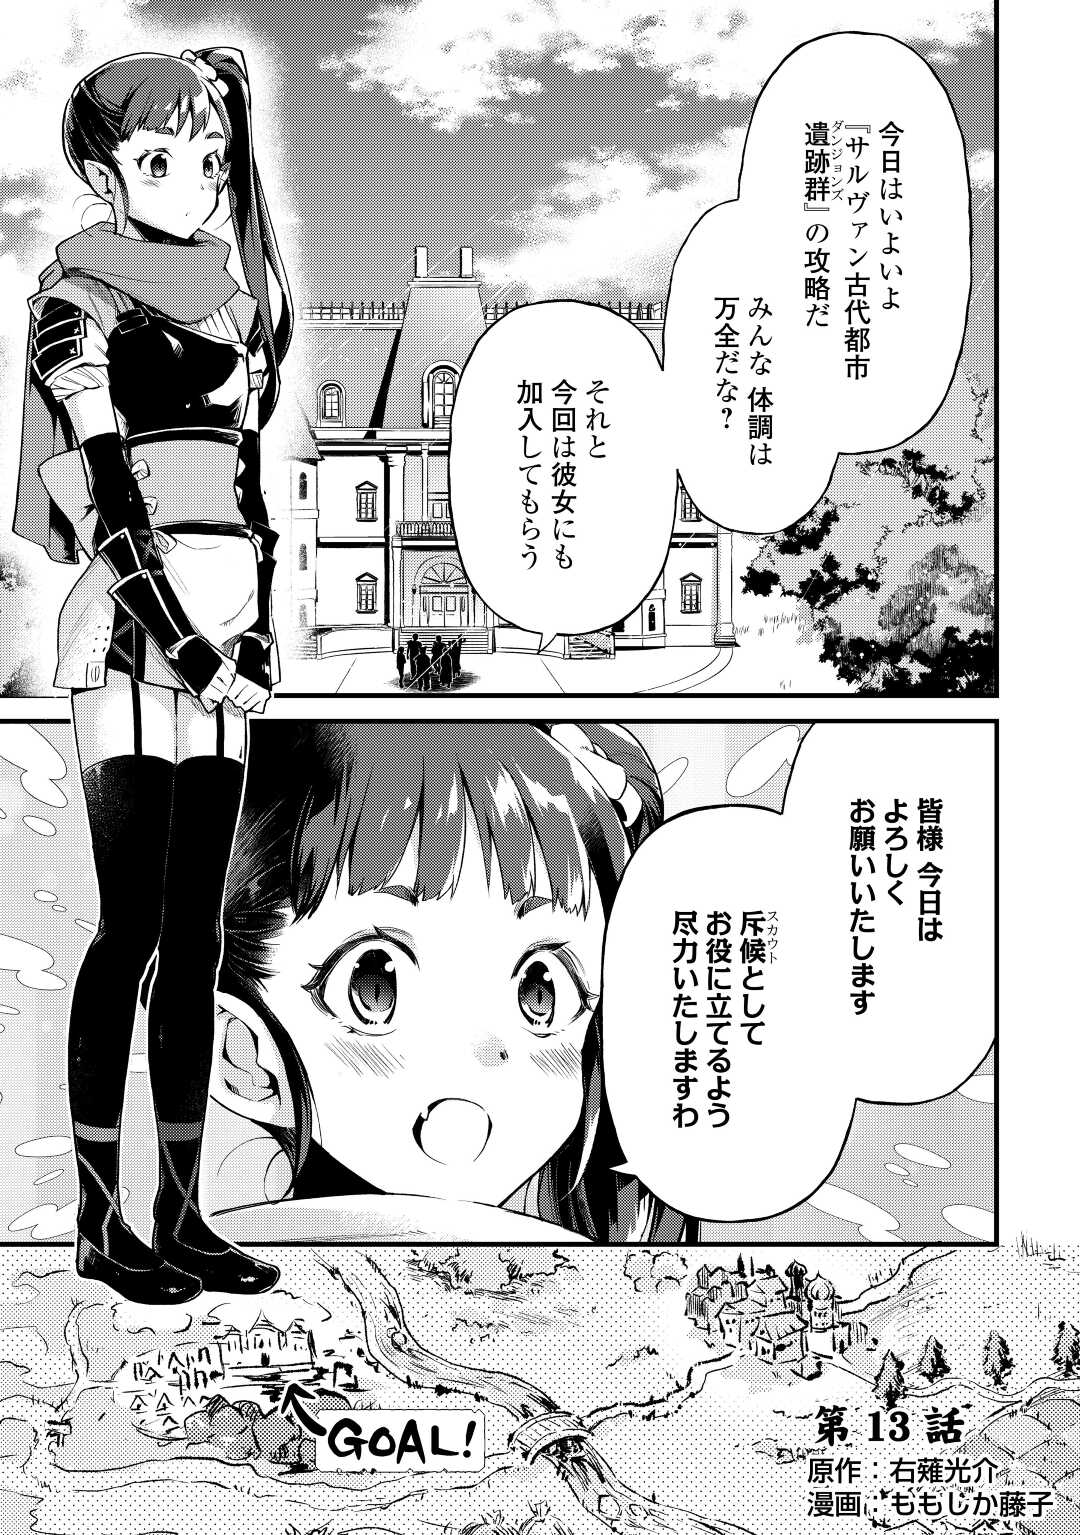 Ochikobore 1 Mahou Tsukai wa, Kyou mo Muishiki ni Cheat o Tsukau - Chapter 13 - Page 1